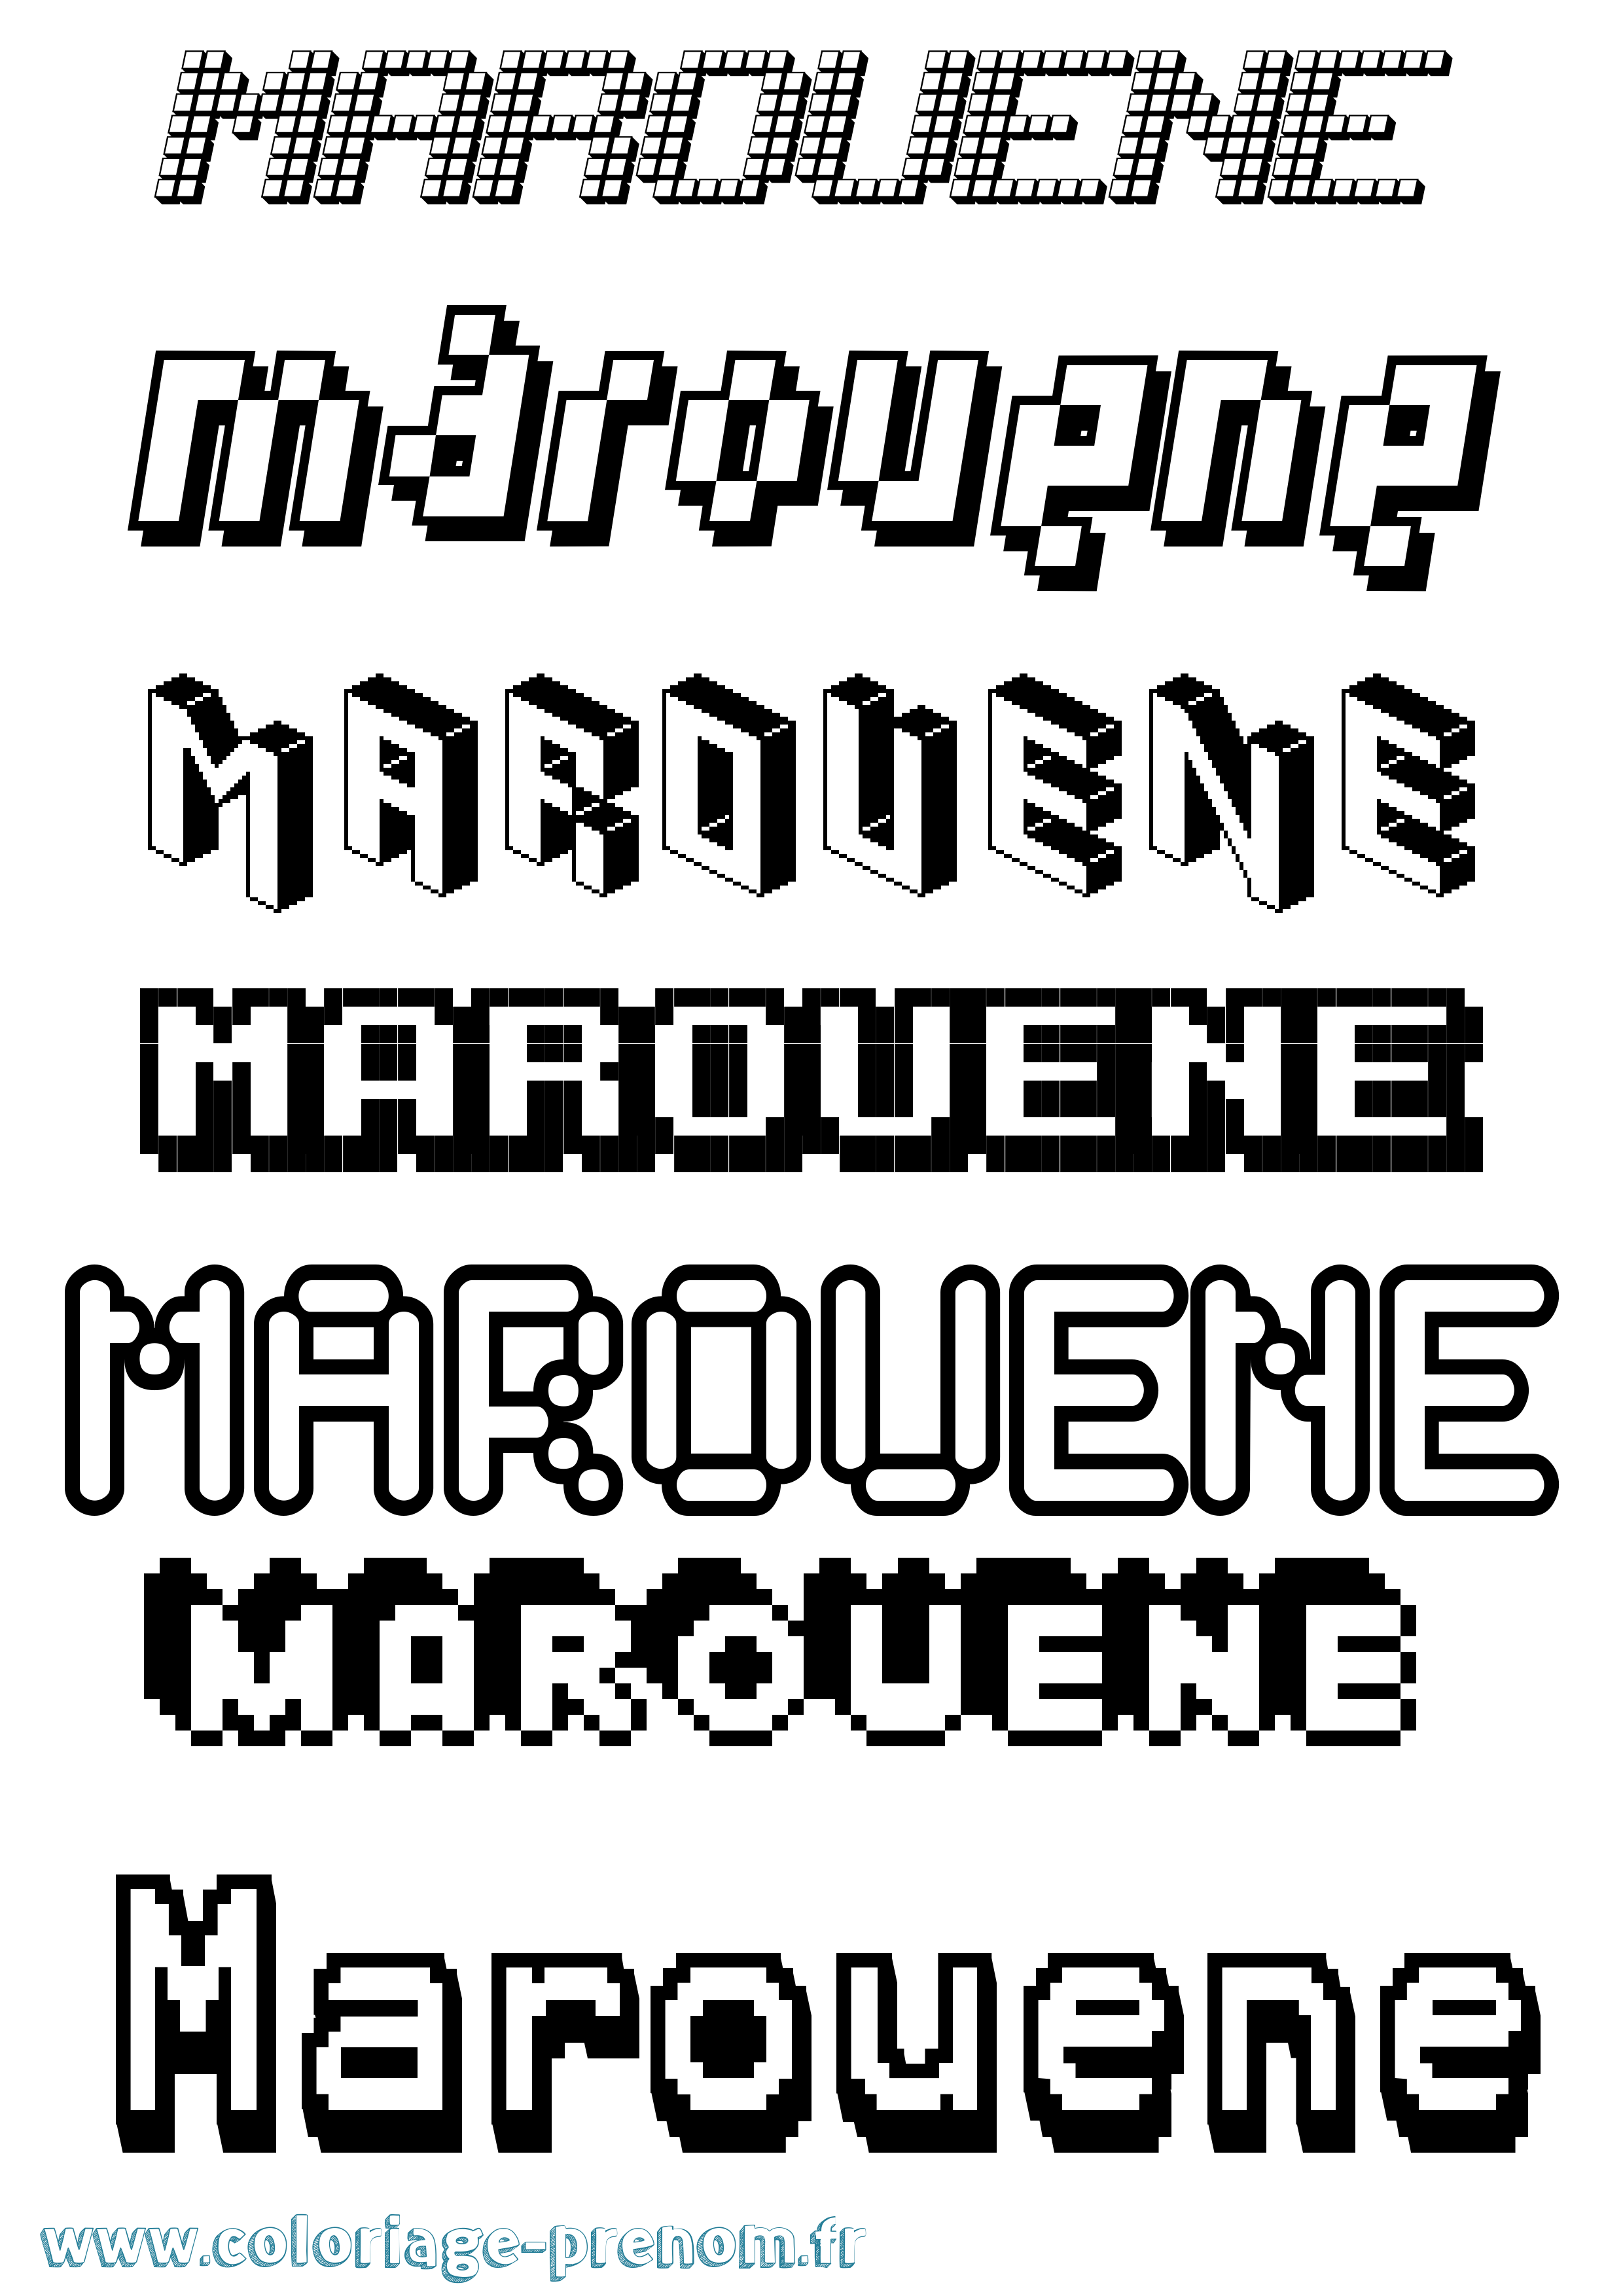 Coloriage prénom Marouene Pixel